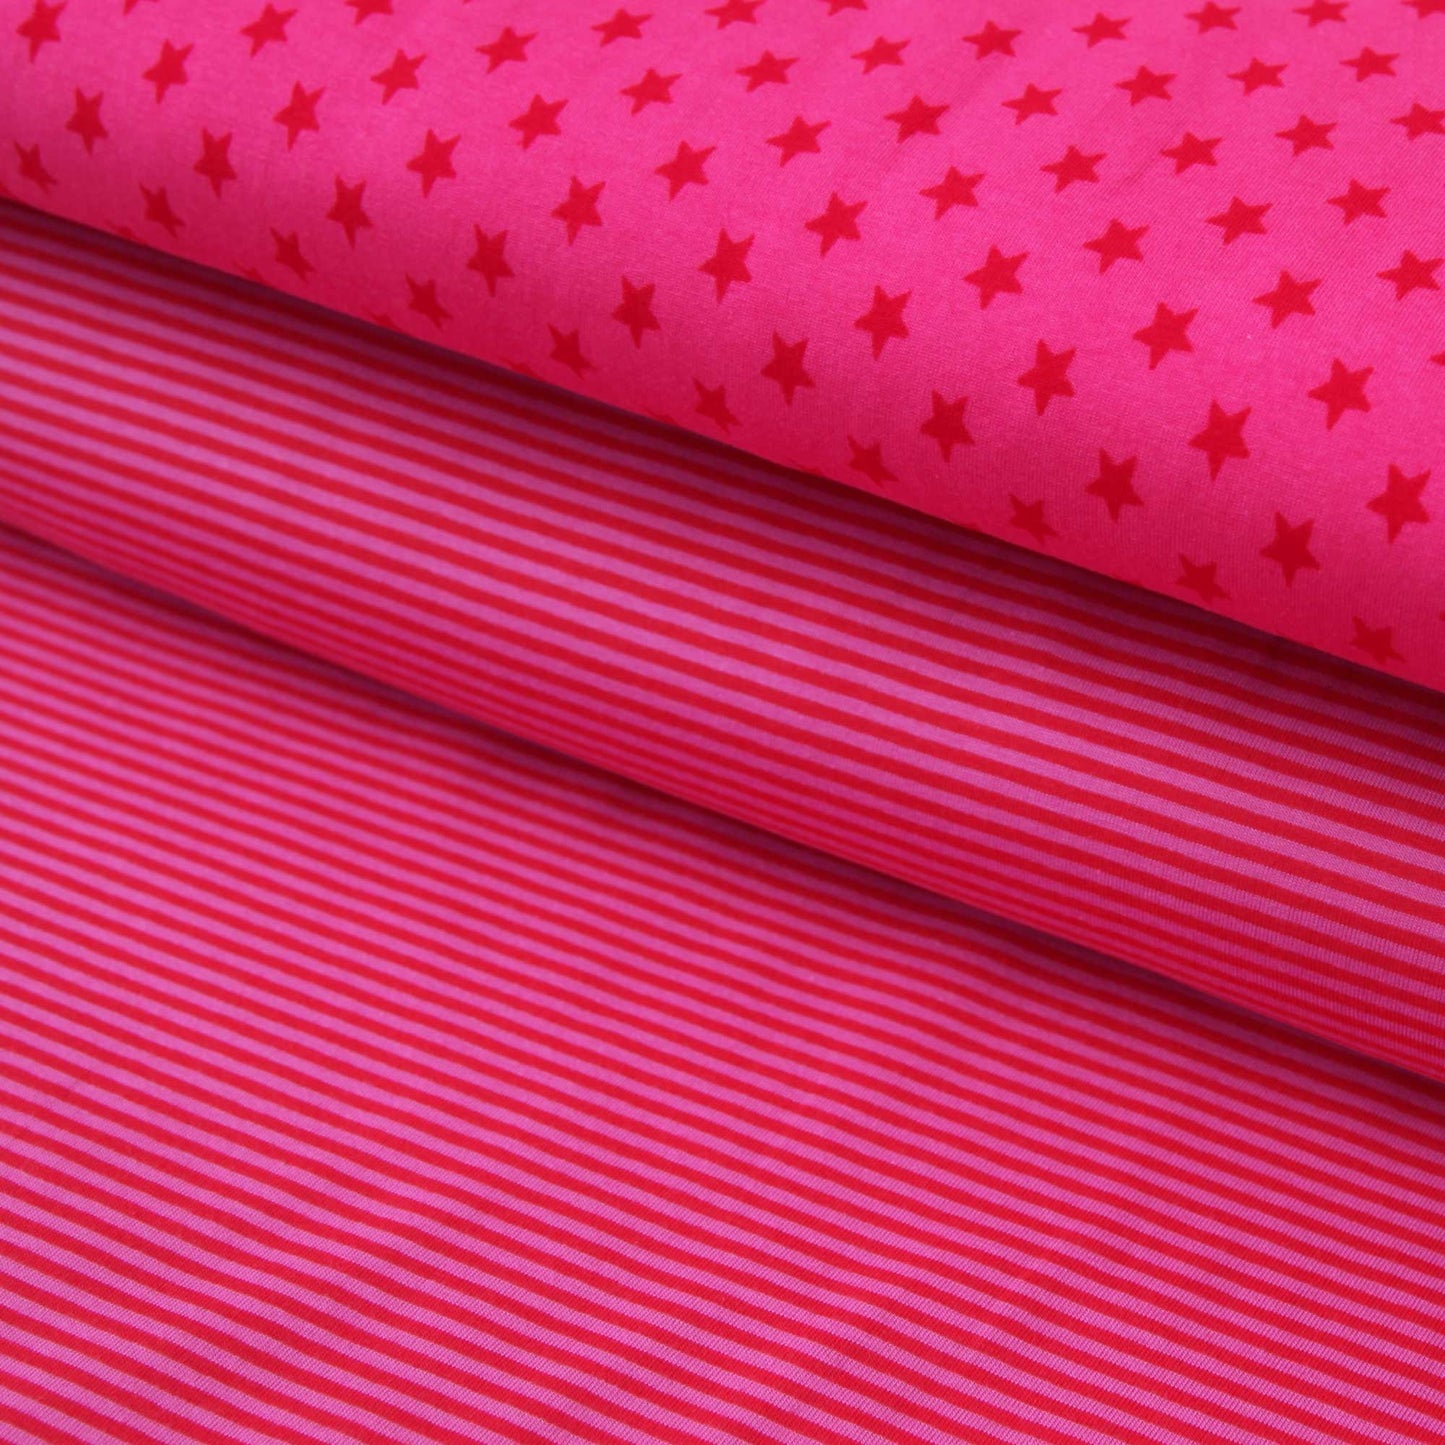 Baumwolljersey "rote 1cm Sterne auf fuchsia" - Jersey Stoff in pink kaufen